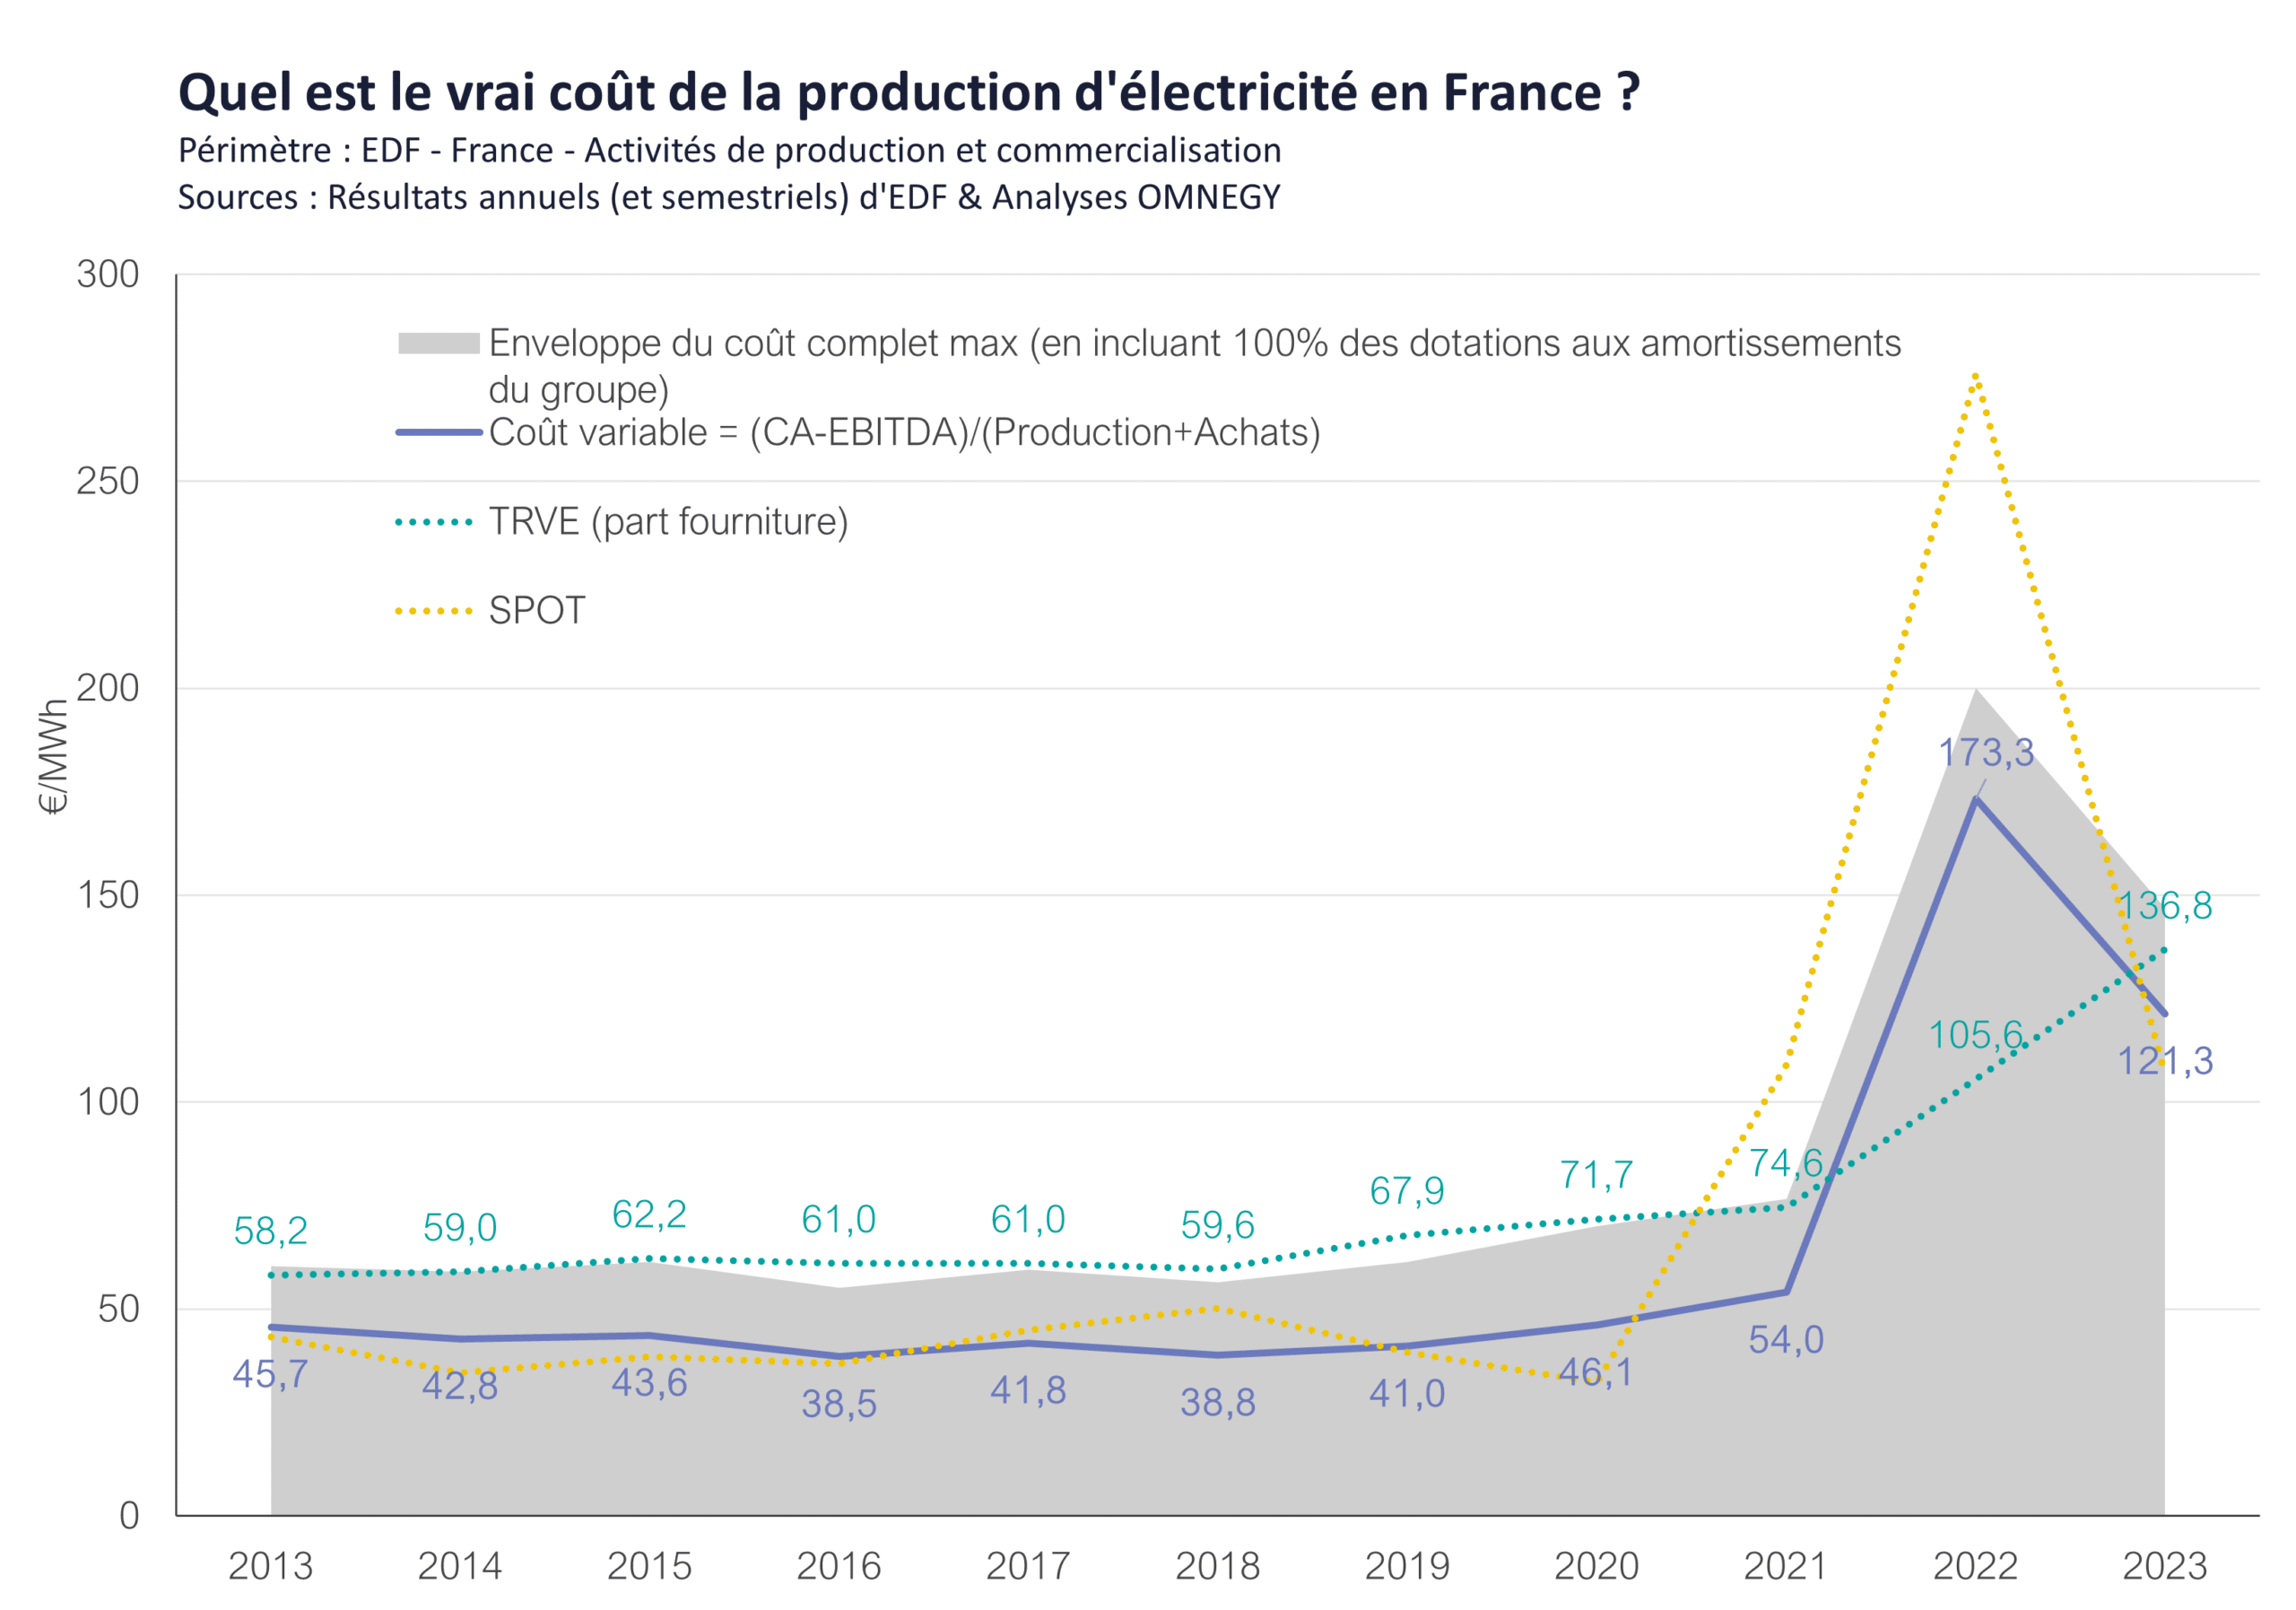 Estimation du vrai coût de production de l’électricité en France par les experts d’OMNEGY 